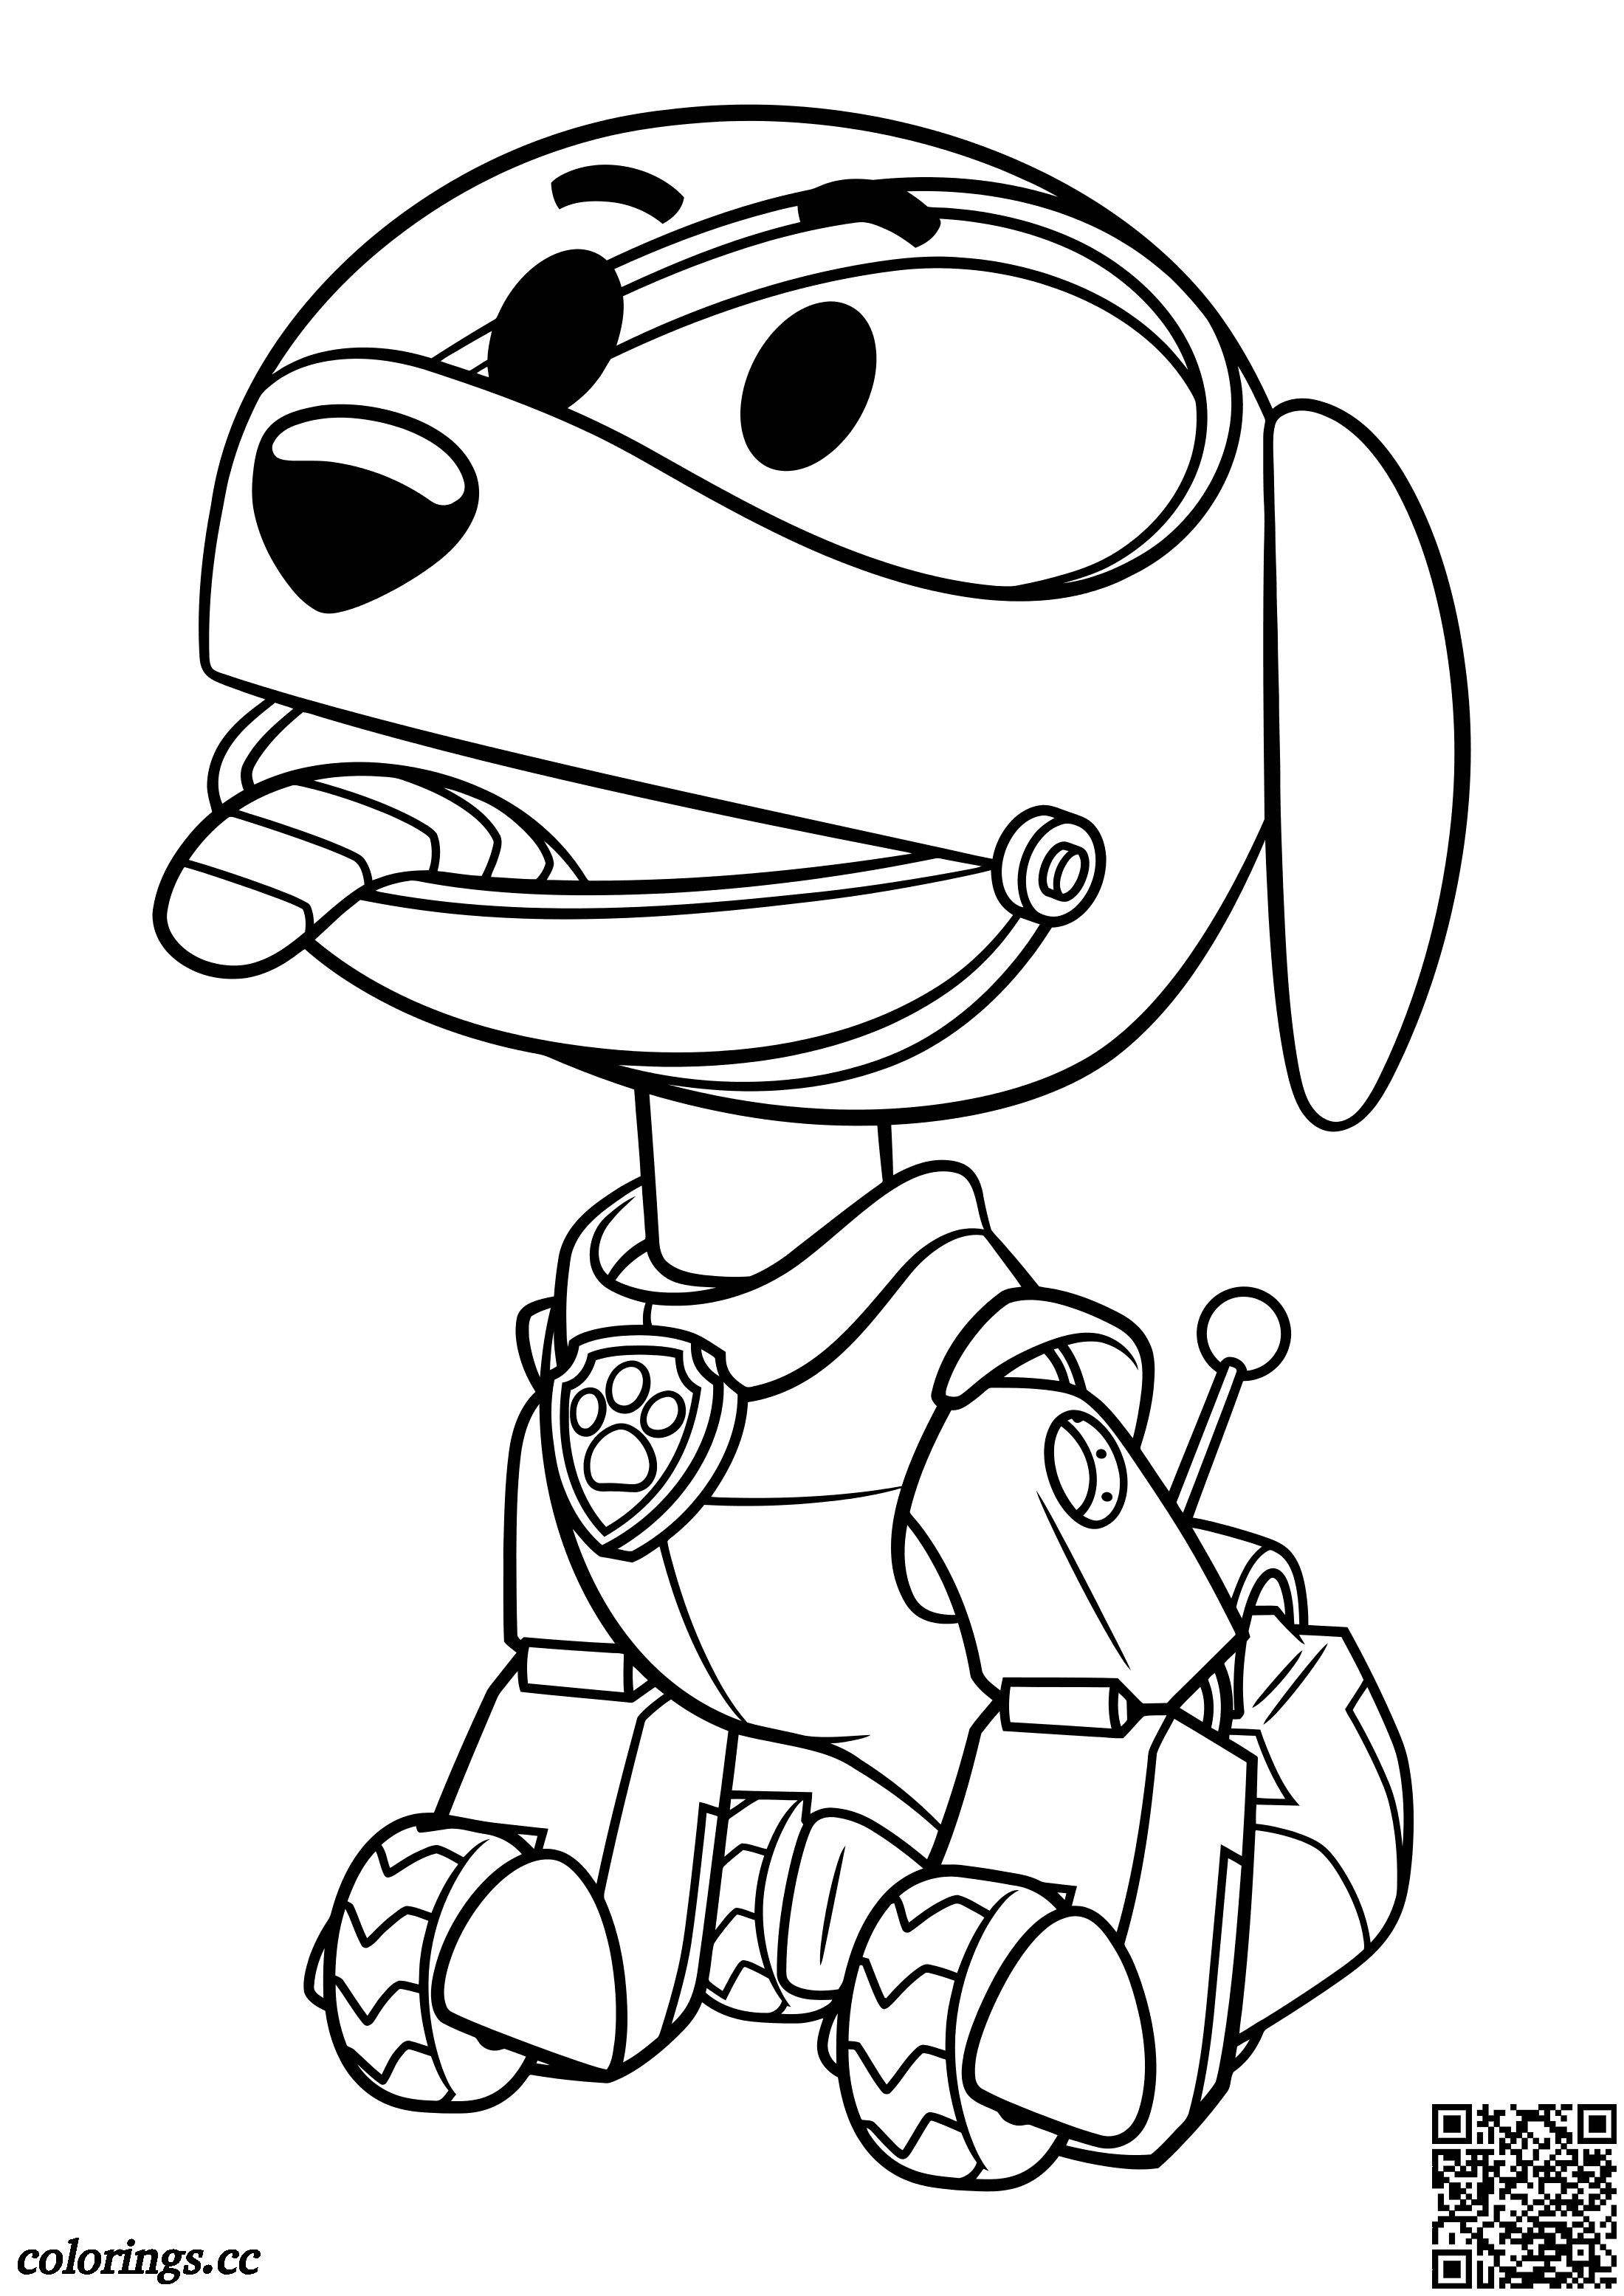 Robo-Dog til Pote patrulje tegninger til farvelægning Colorings.cc